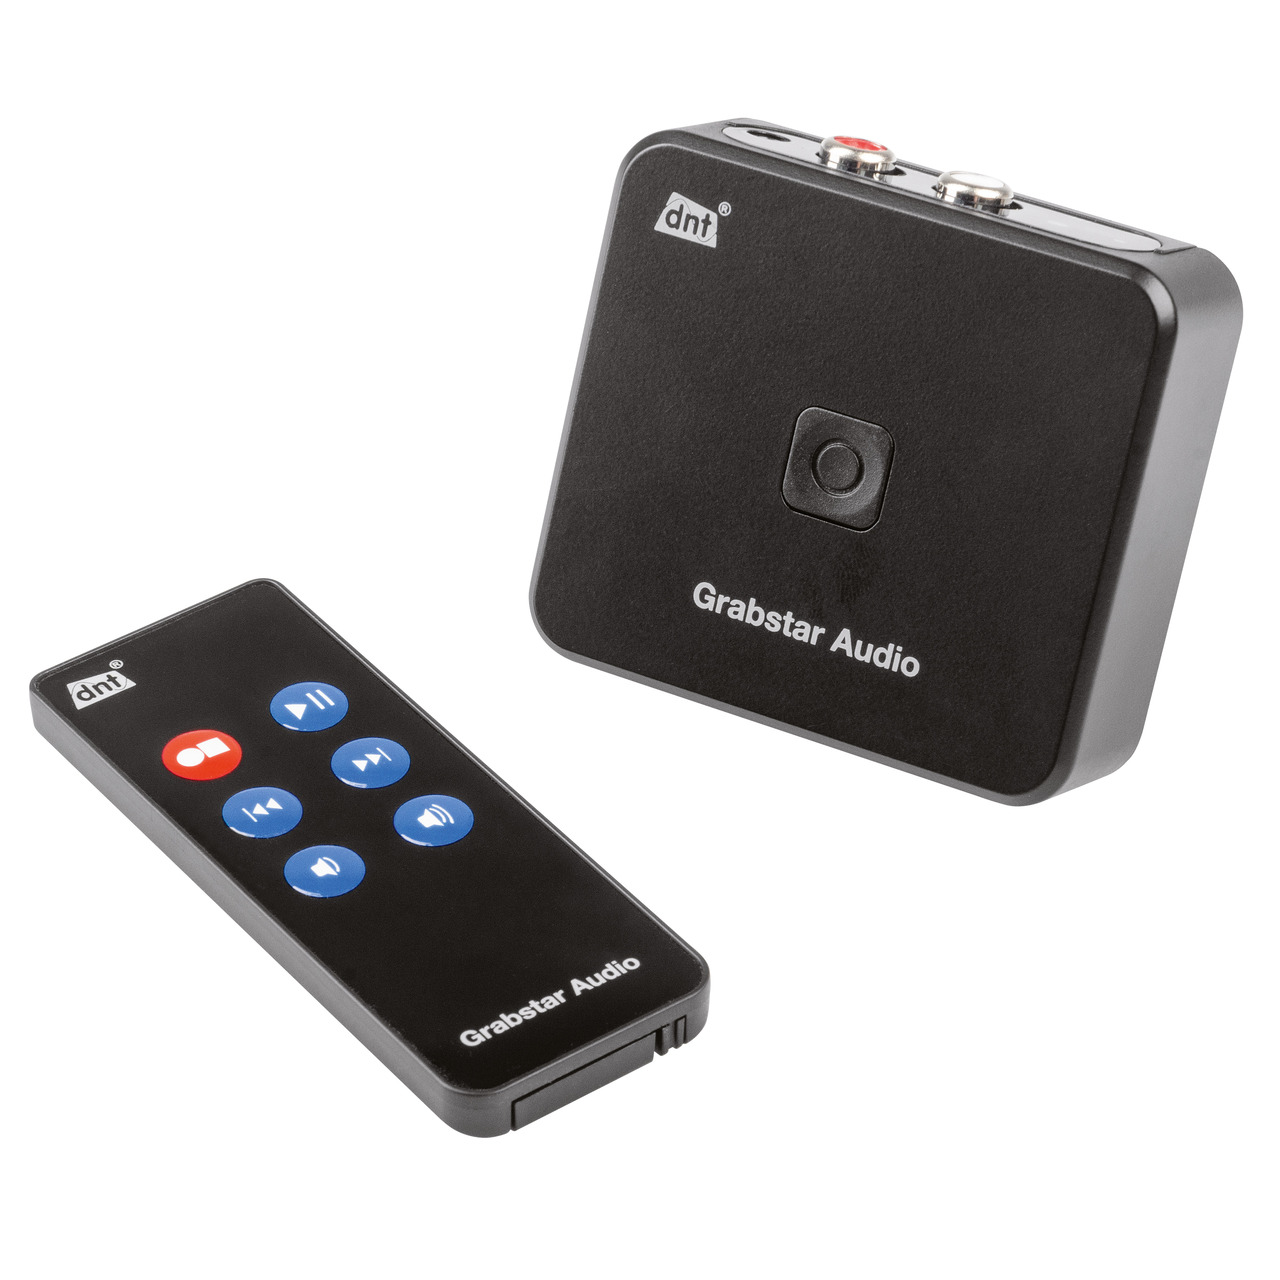 dnt Stand-alone Audio-Digitalisierer Grabstar Audio- für Kassetten und Tonbänder- speichert auf SD-USB